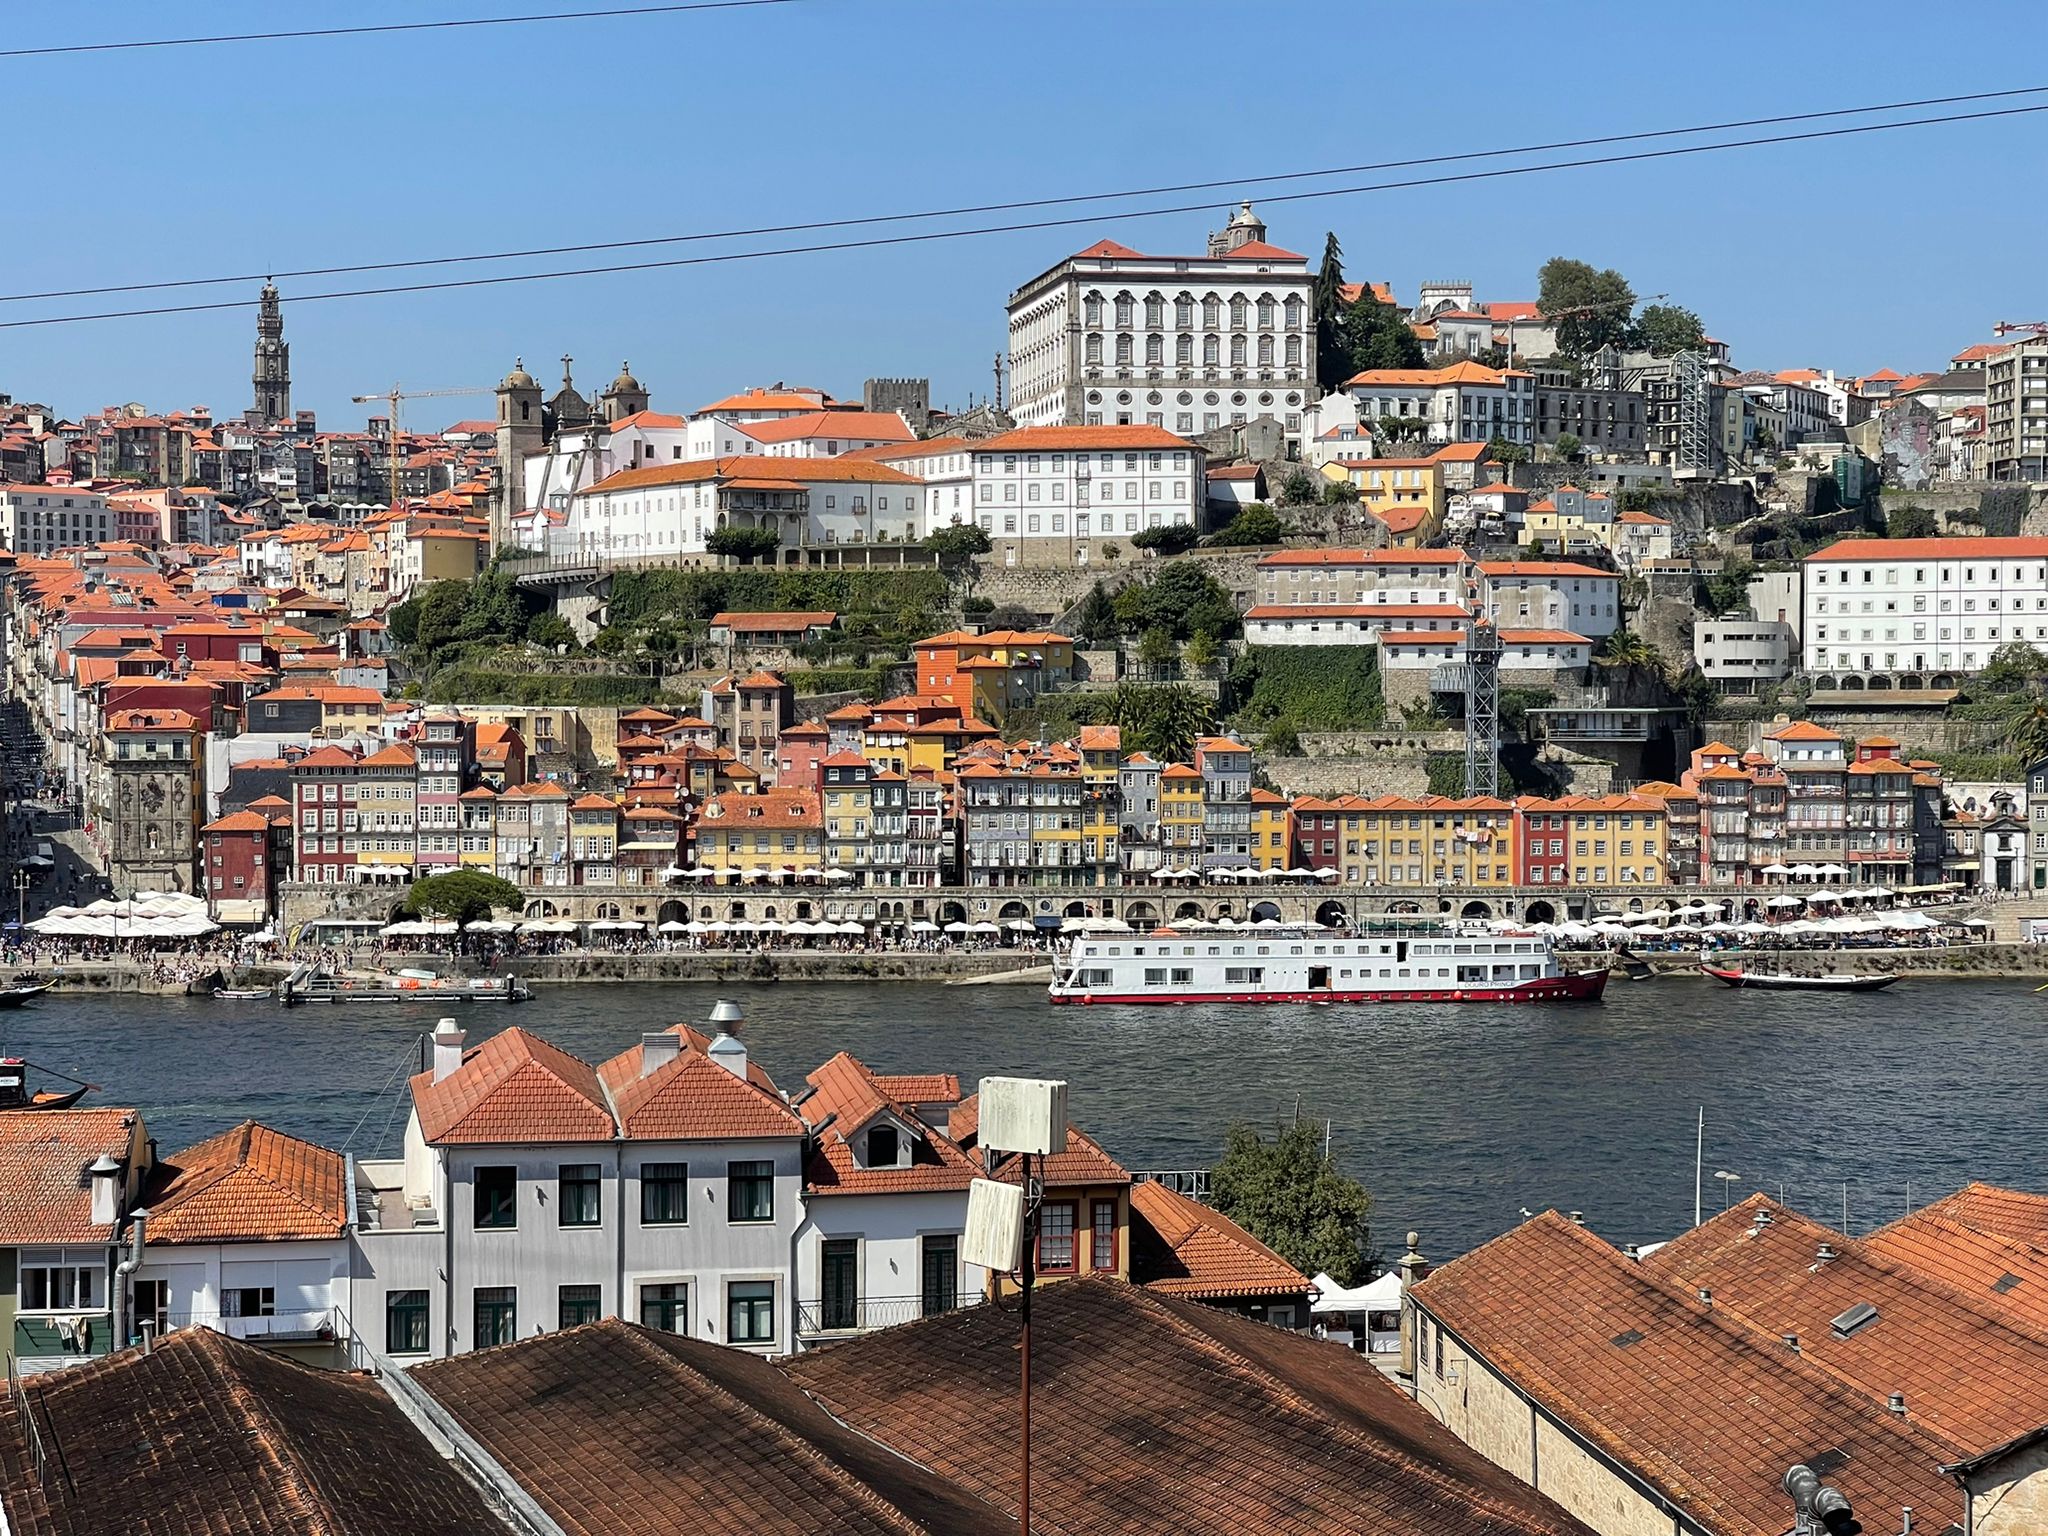 מי שהשקיע בנדל"ן בפורטוגל, הרוויח כפליים כי הוא השקיע במדינה הטובה ביותר בעולם מבחינה תיירותית!